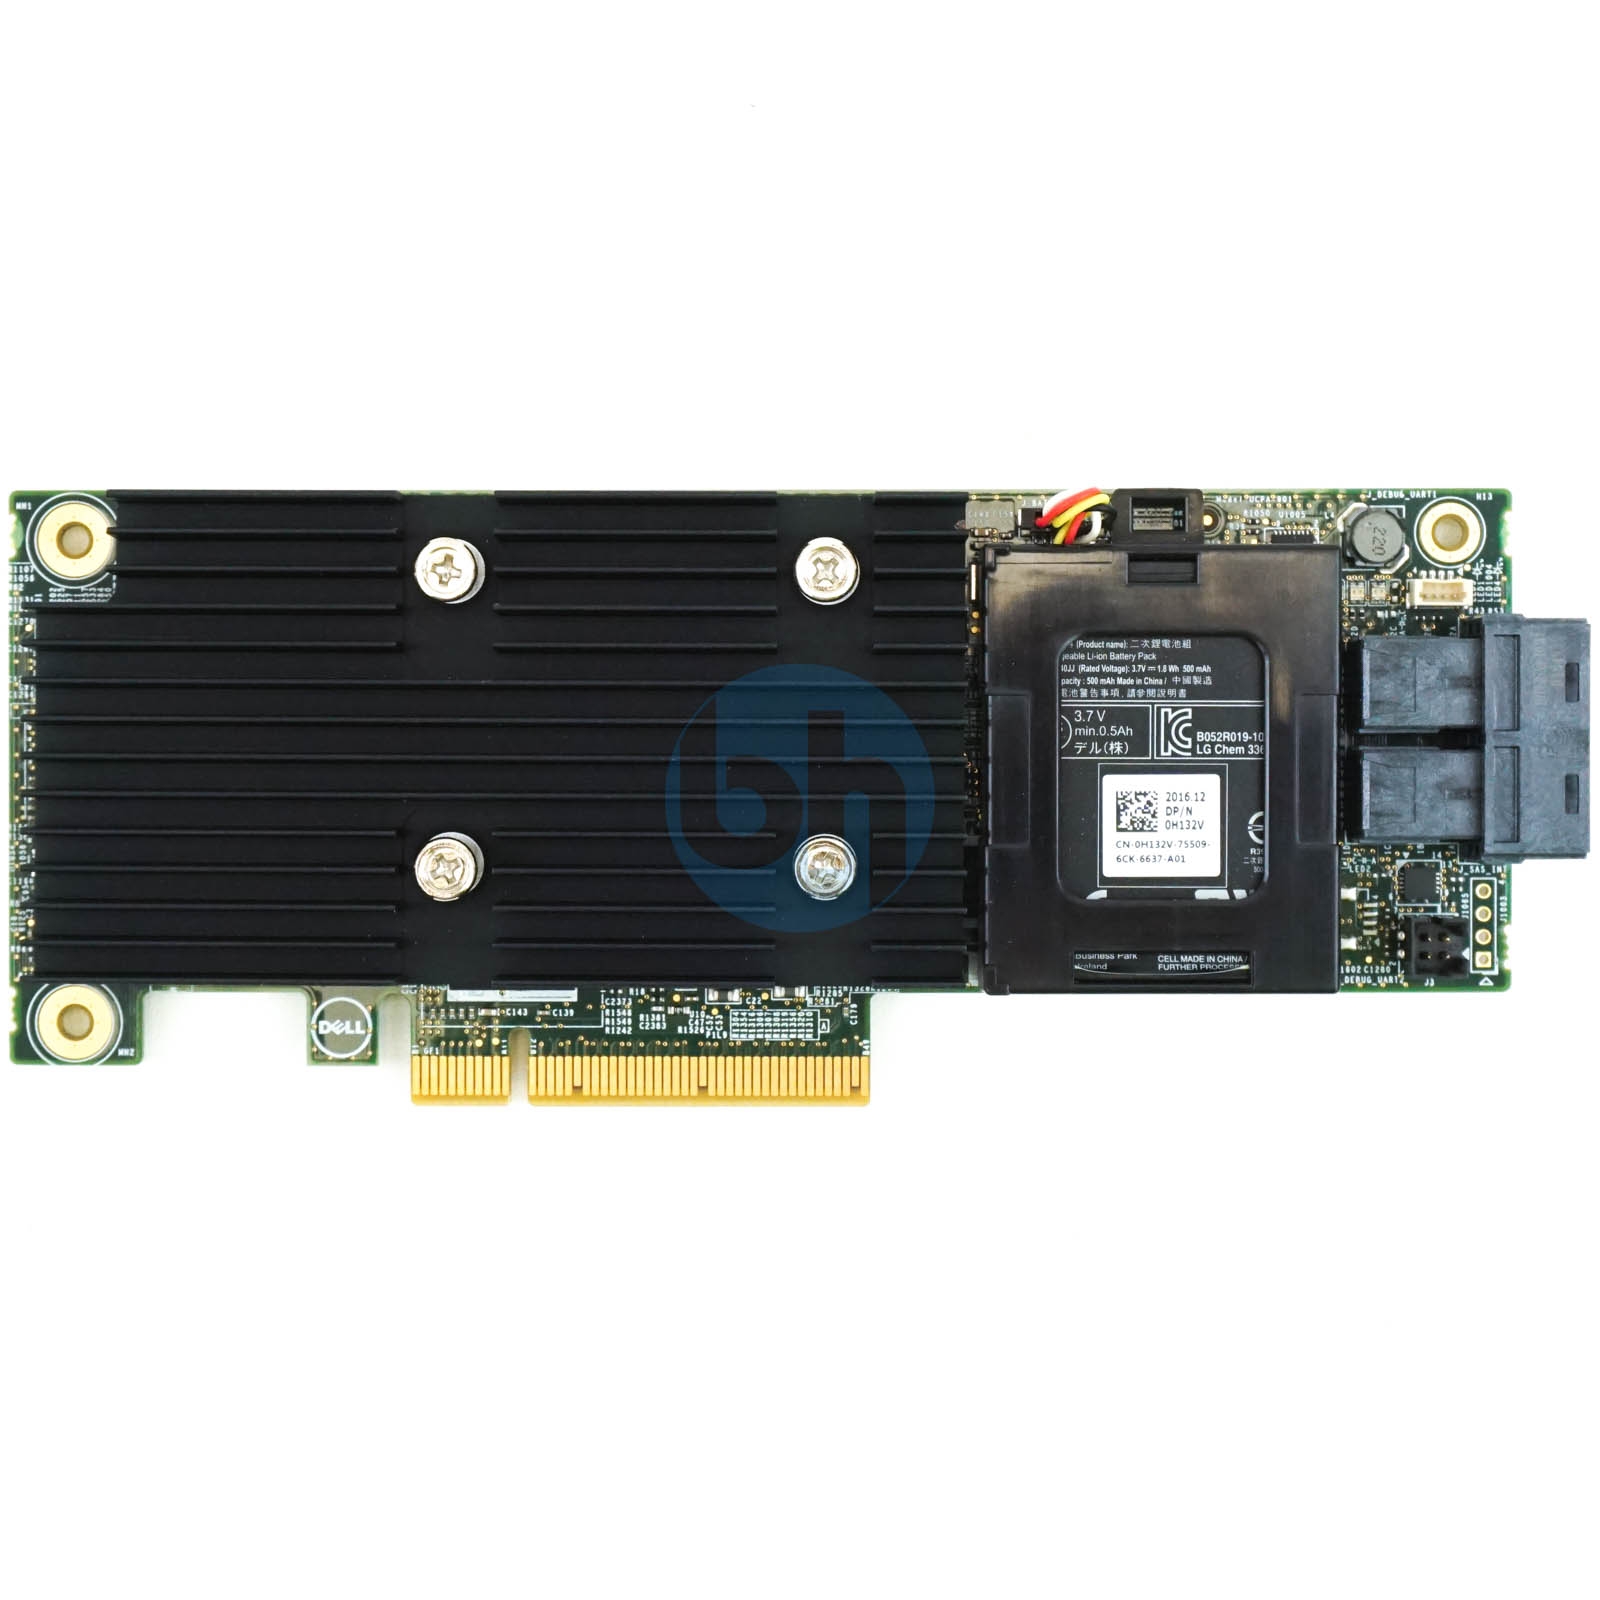 Dell 44GNF PERC H730 1GB Non-Volatile PCIe-x8 12Gbps RAID Controller 044GNF